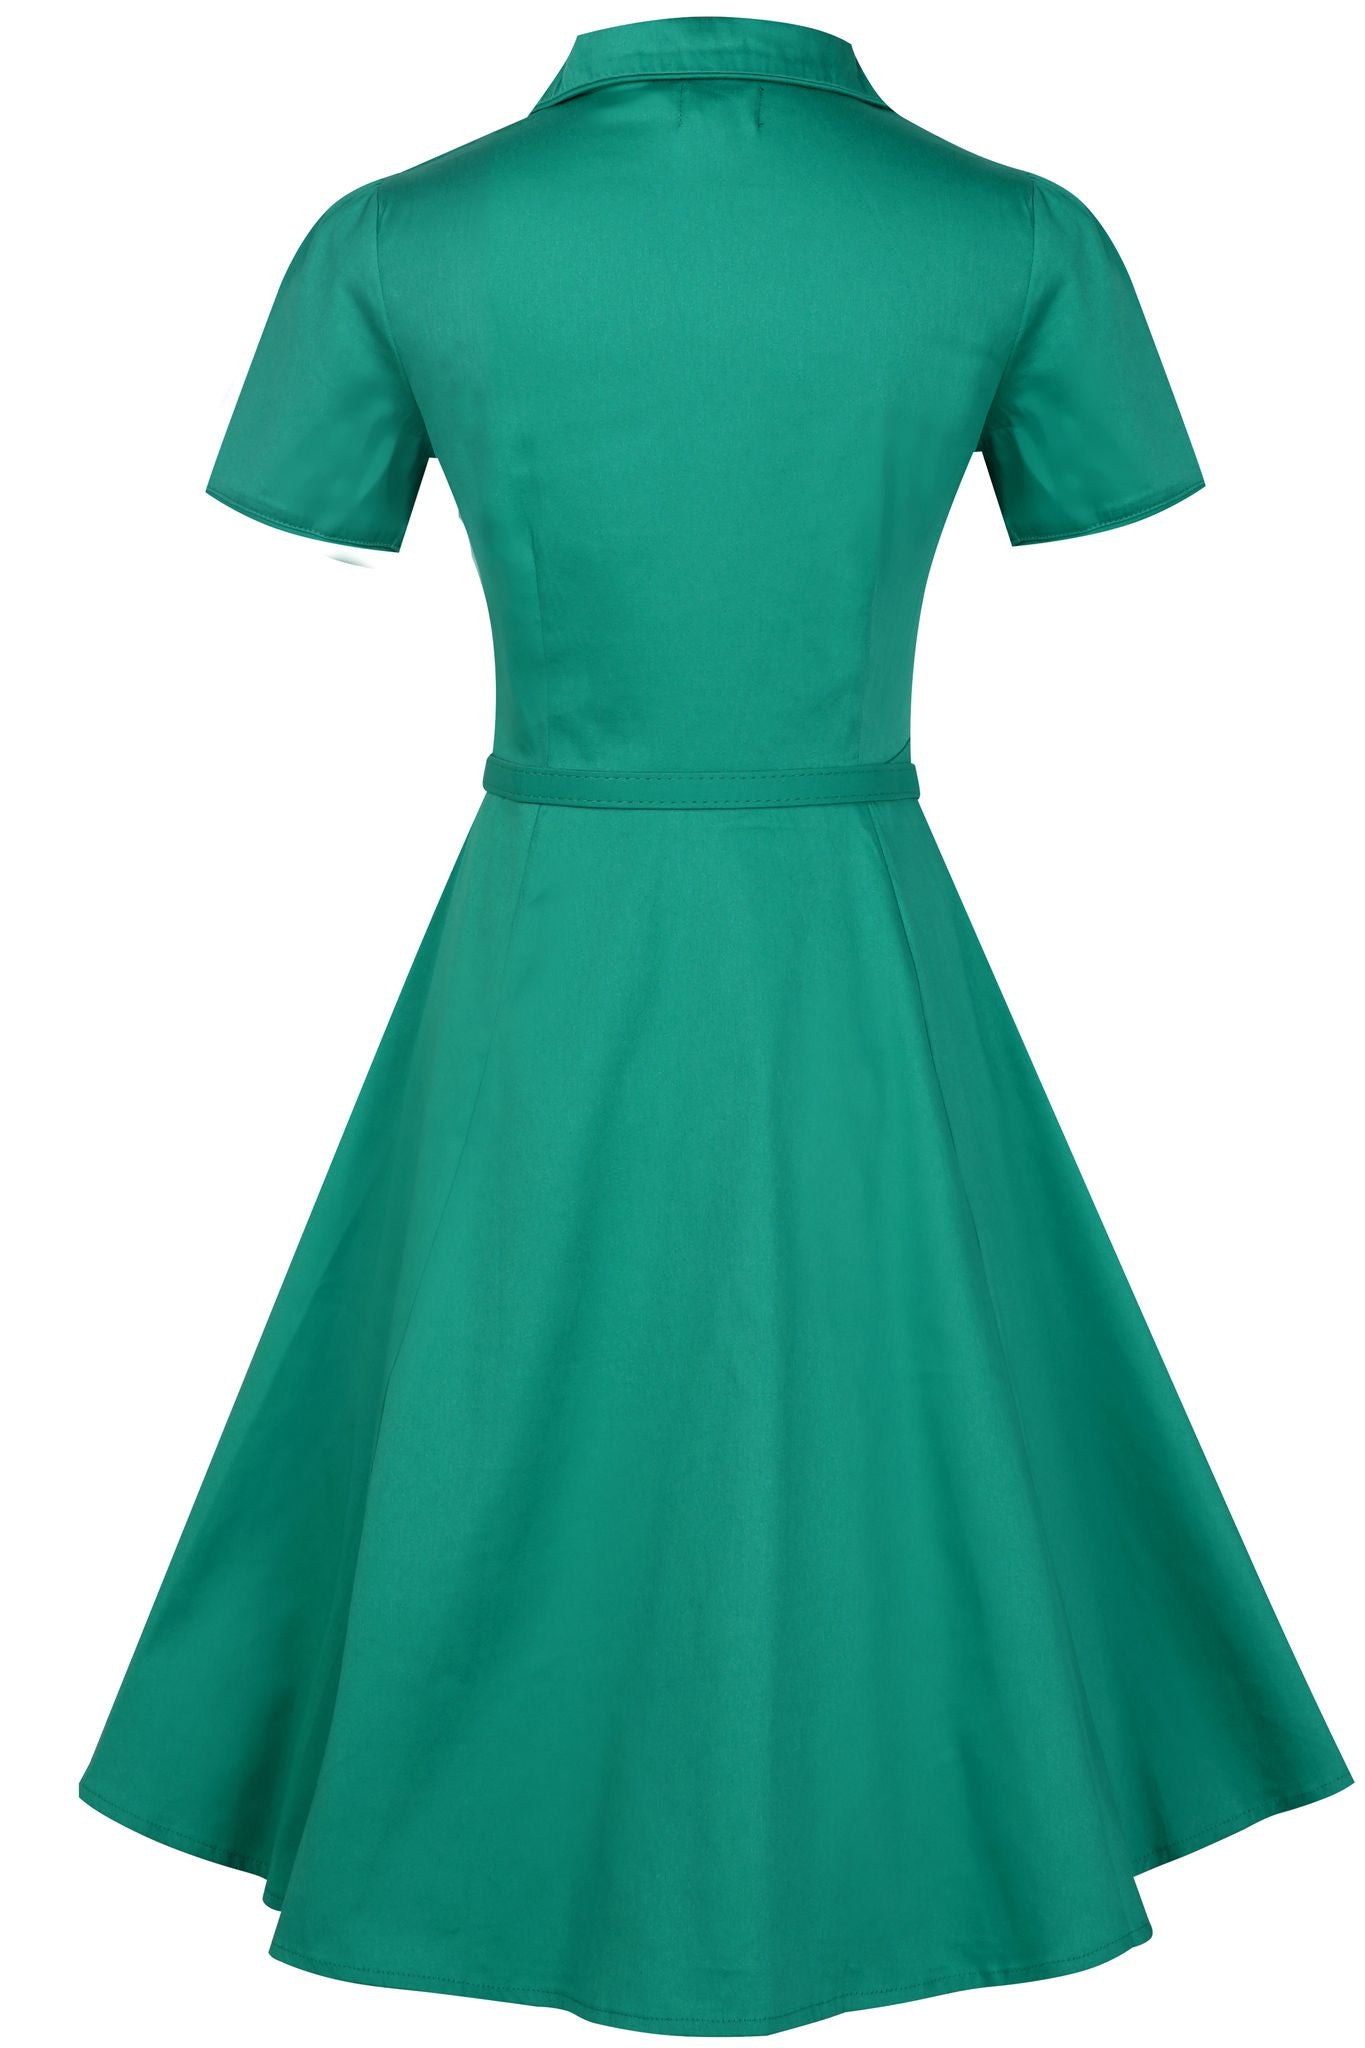 Penelope Rockabilly Green Shirt Dress